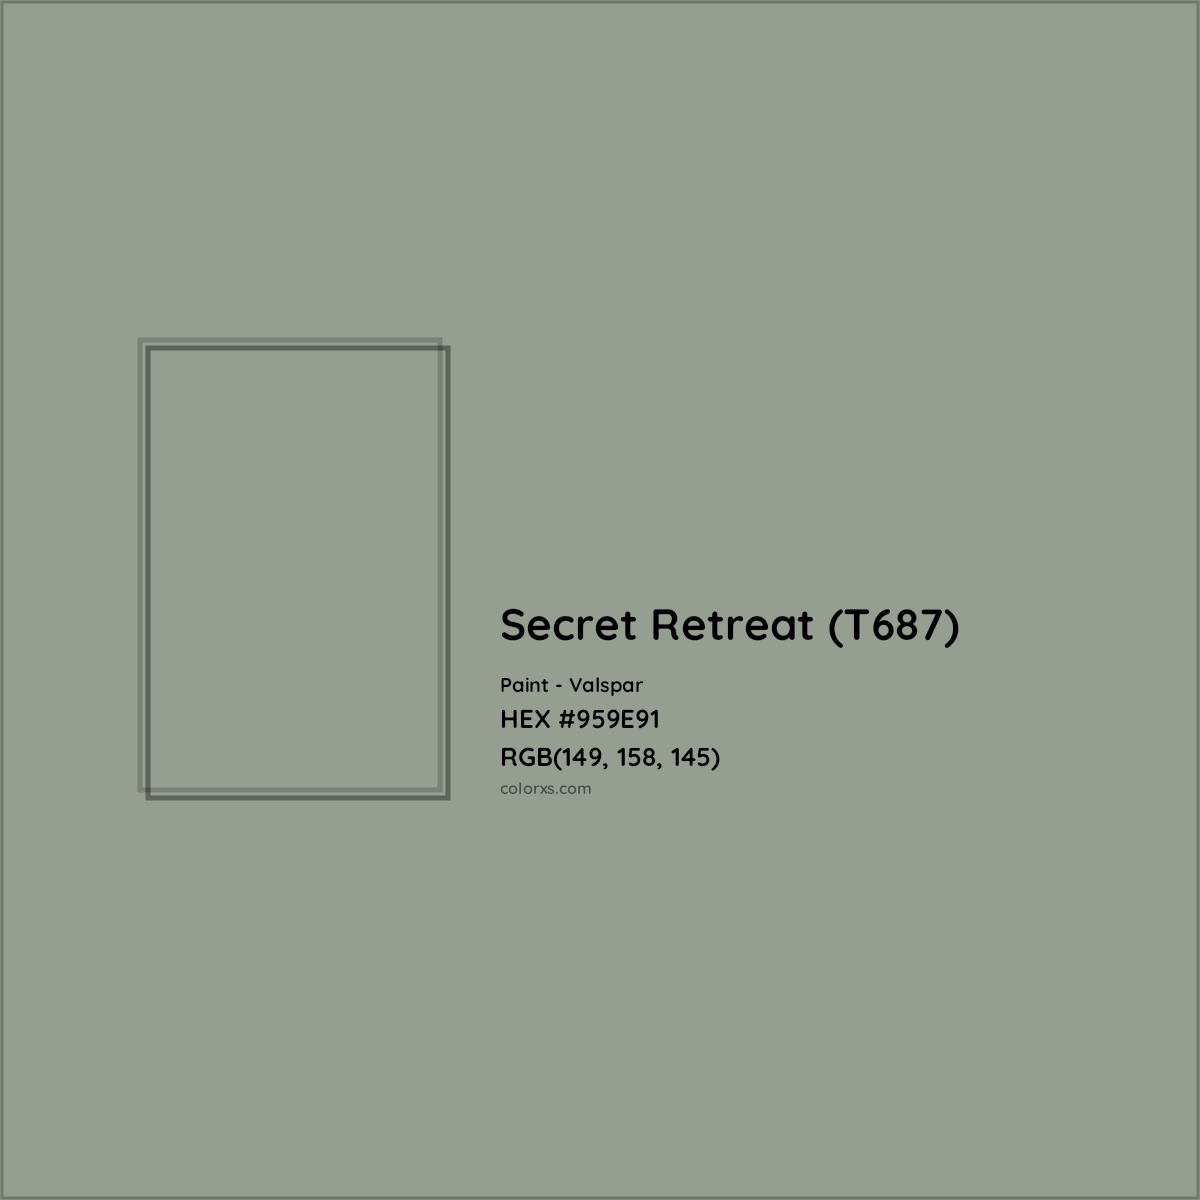 HEX #959E91 Secret Retreat (T687) Paint Valspar - Color Code